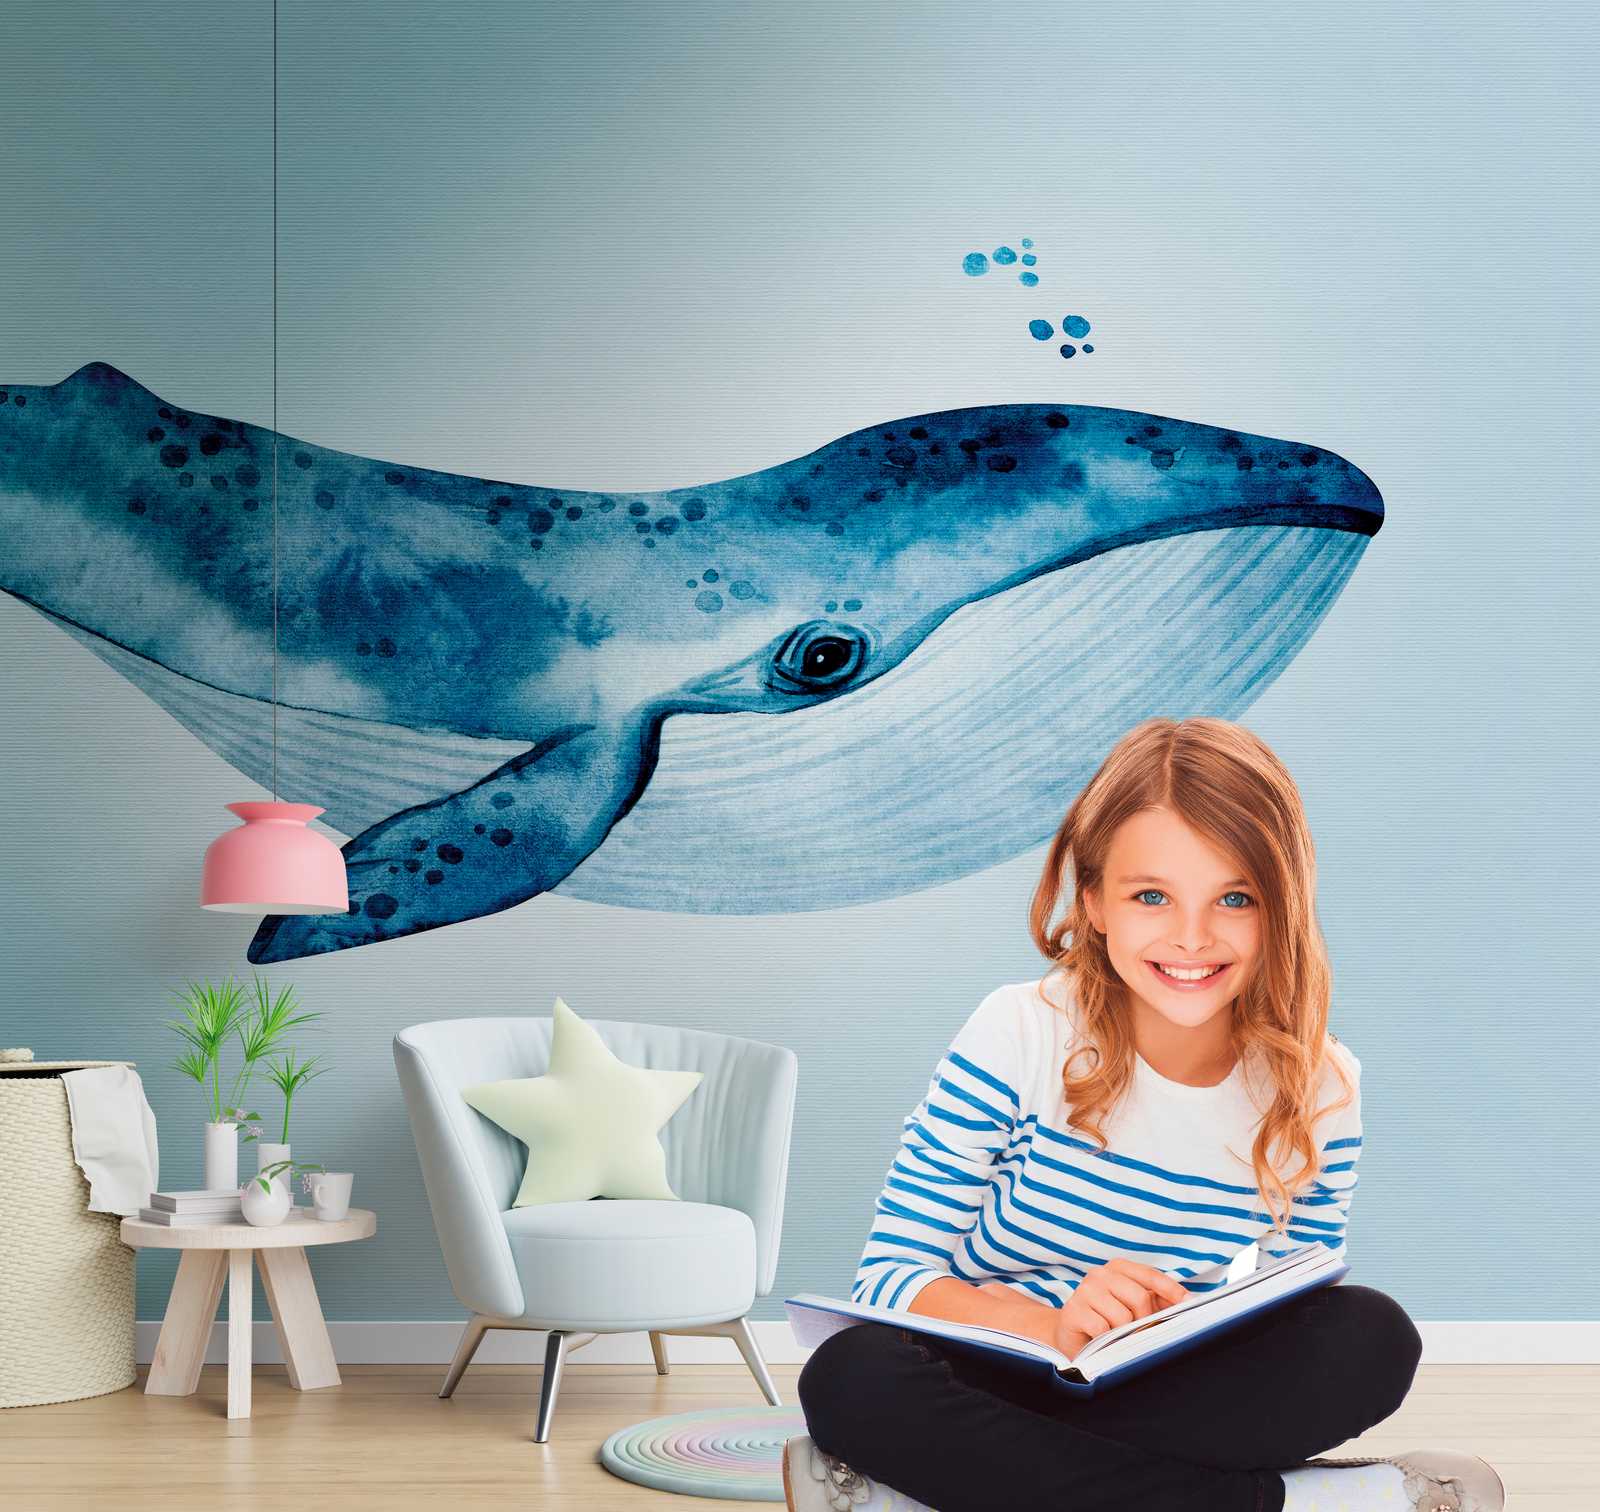             behang nieuwigheid - motief behang blauwe walvis onder water aquarel
        